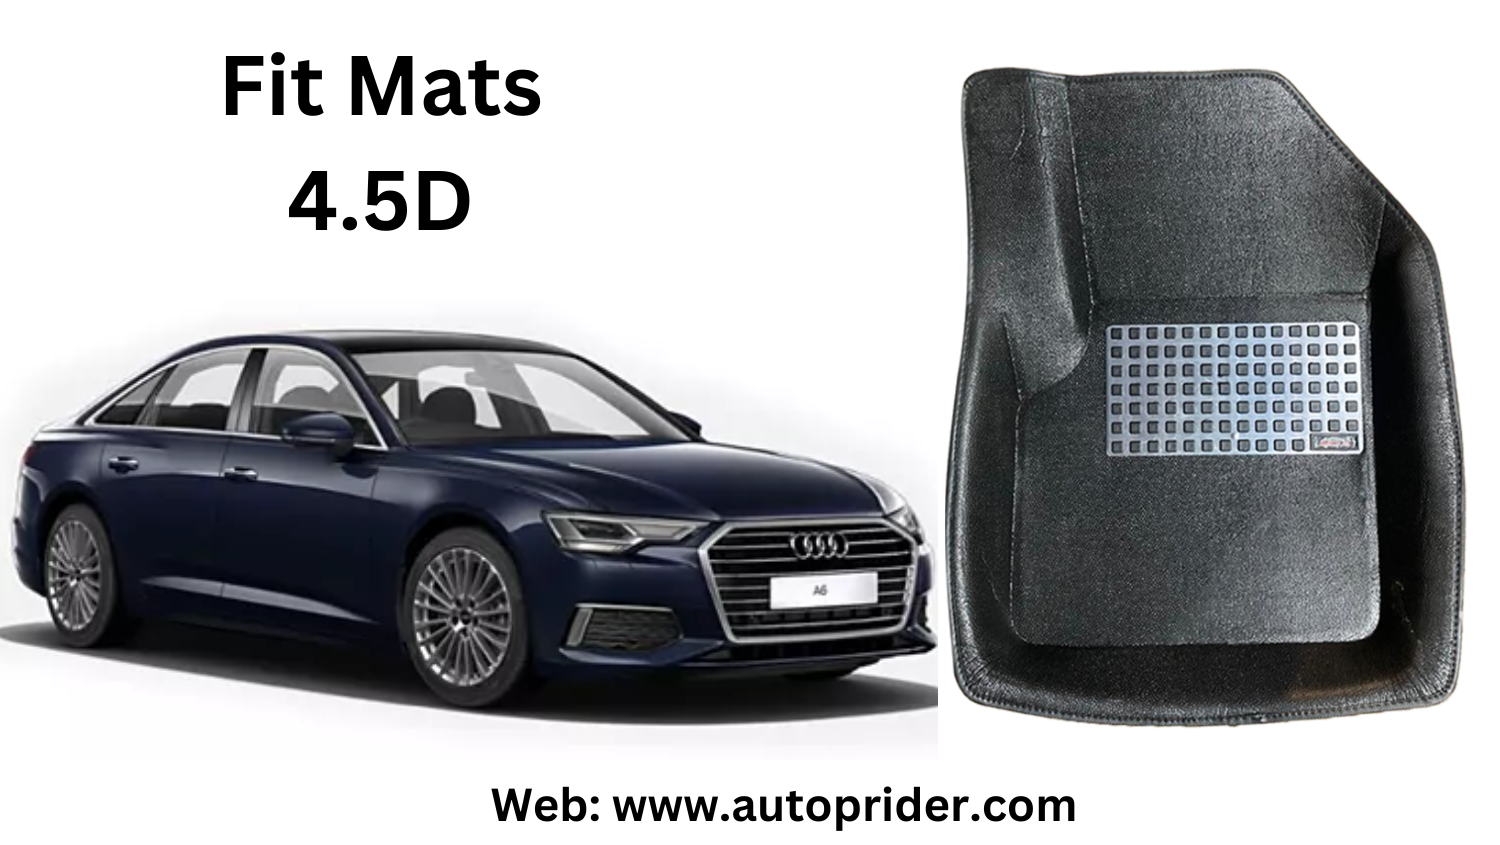 Autoprider | Fit Mats 4.5D Economy Car Mats for Audi A6